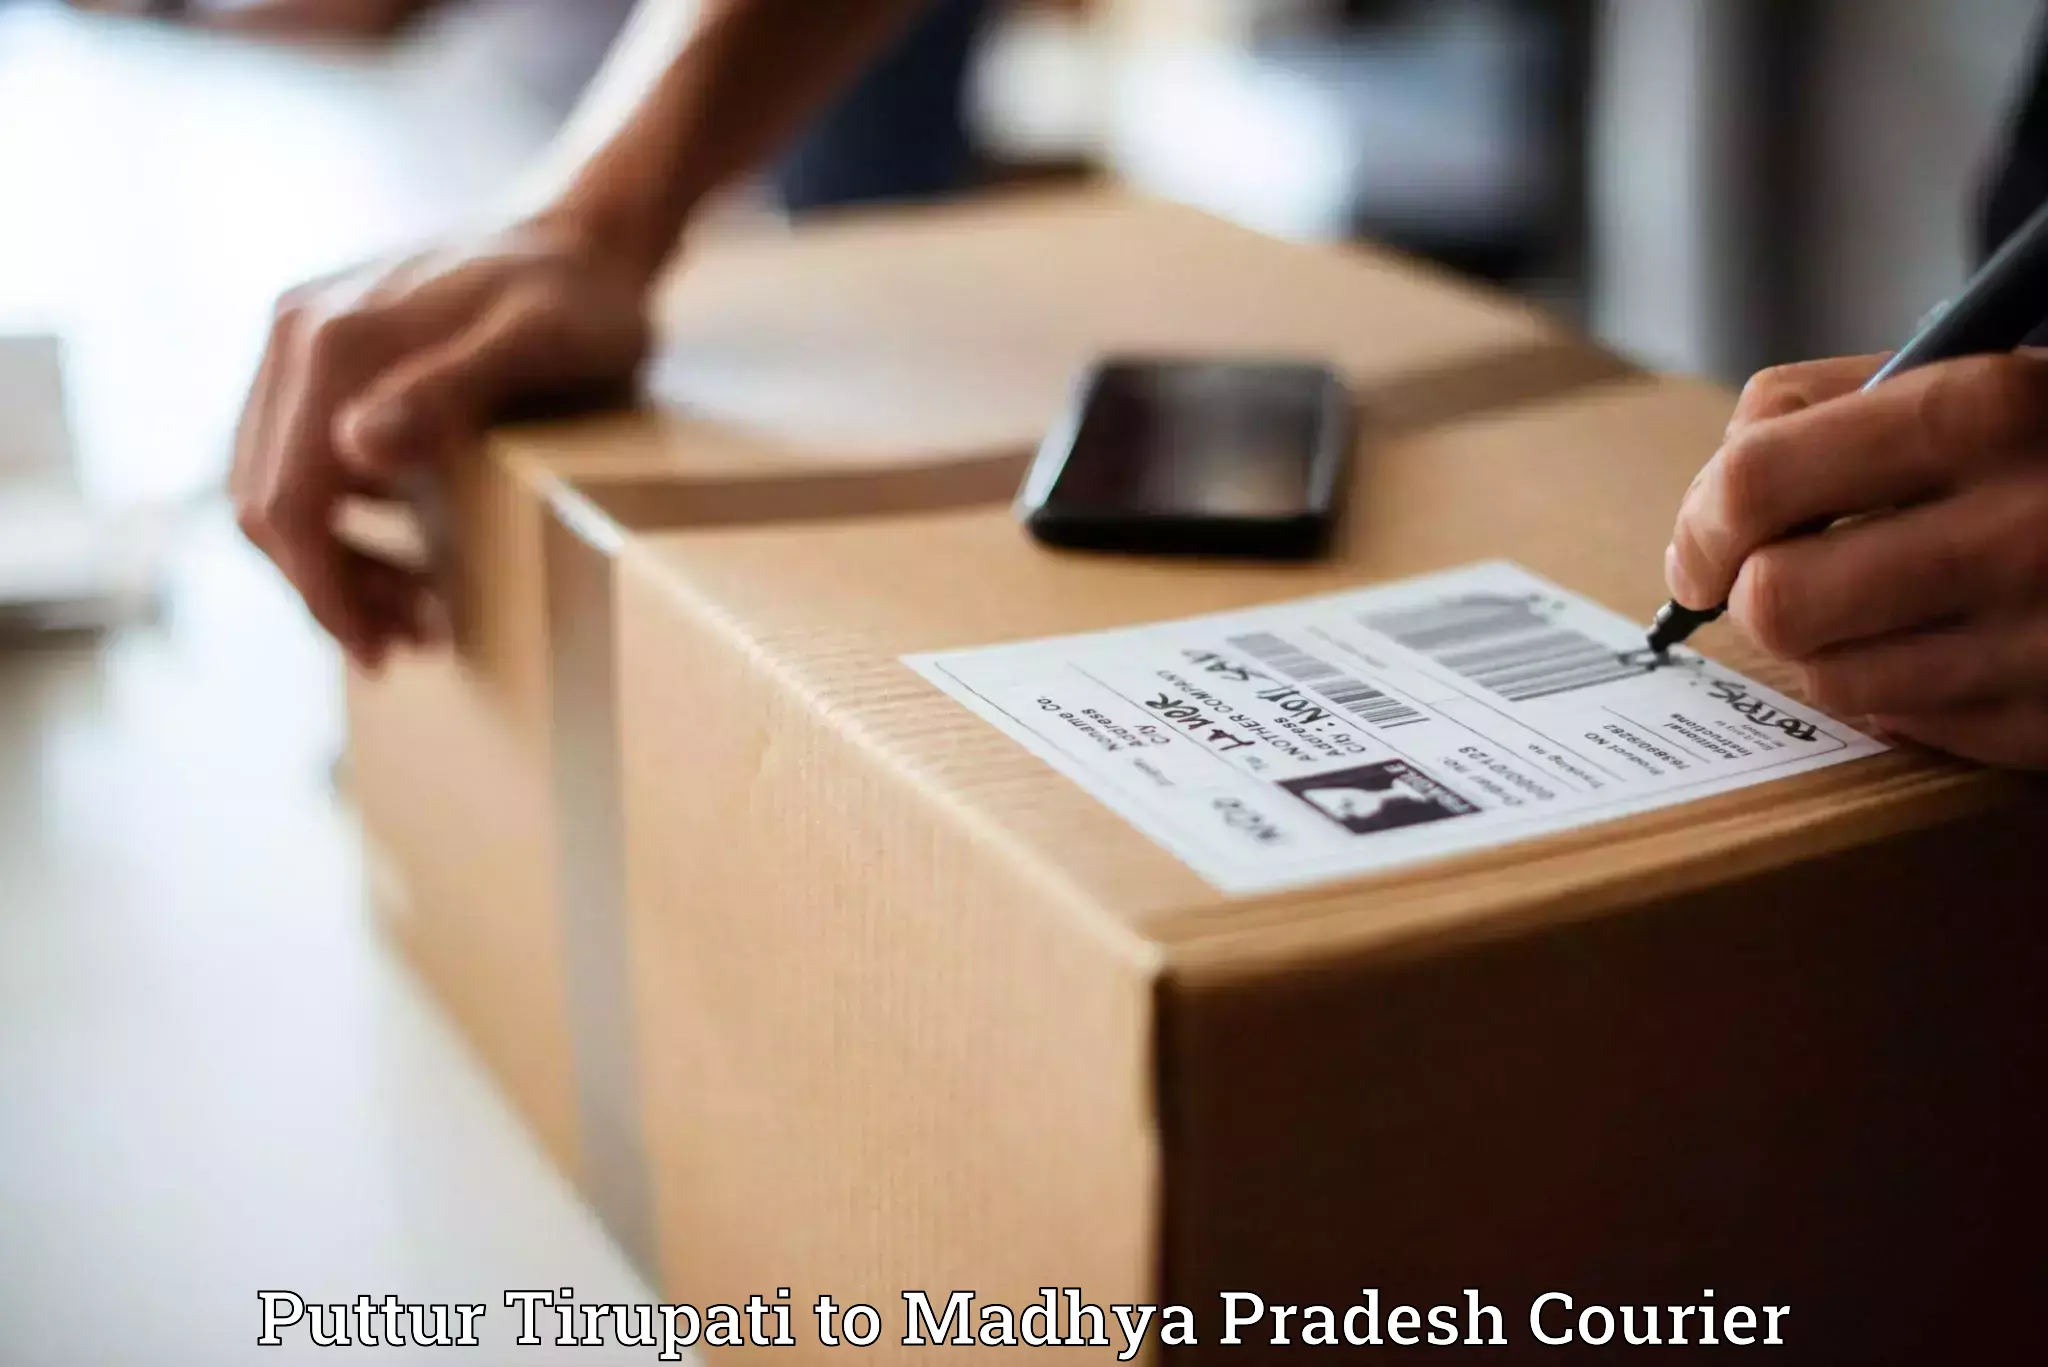 Professional courier services Puttur Tirupati to Khajuraho